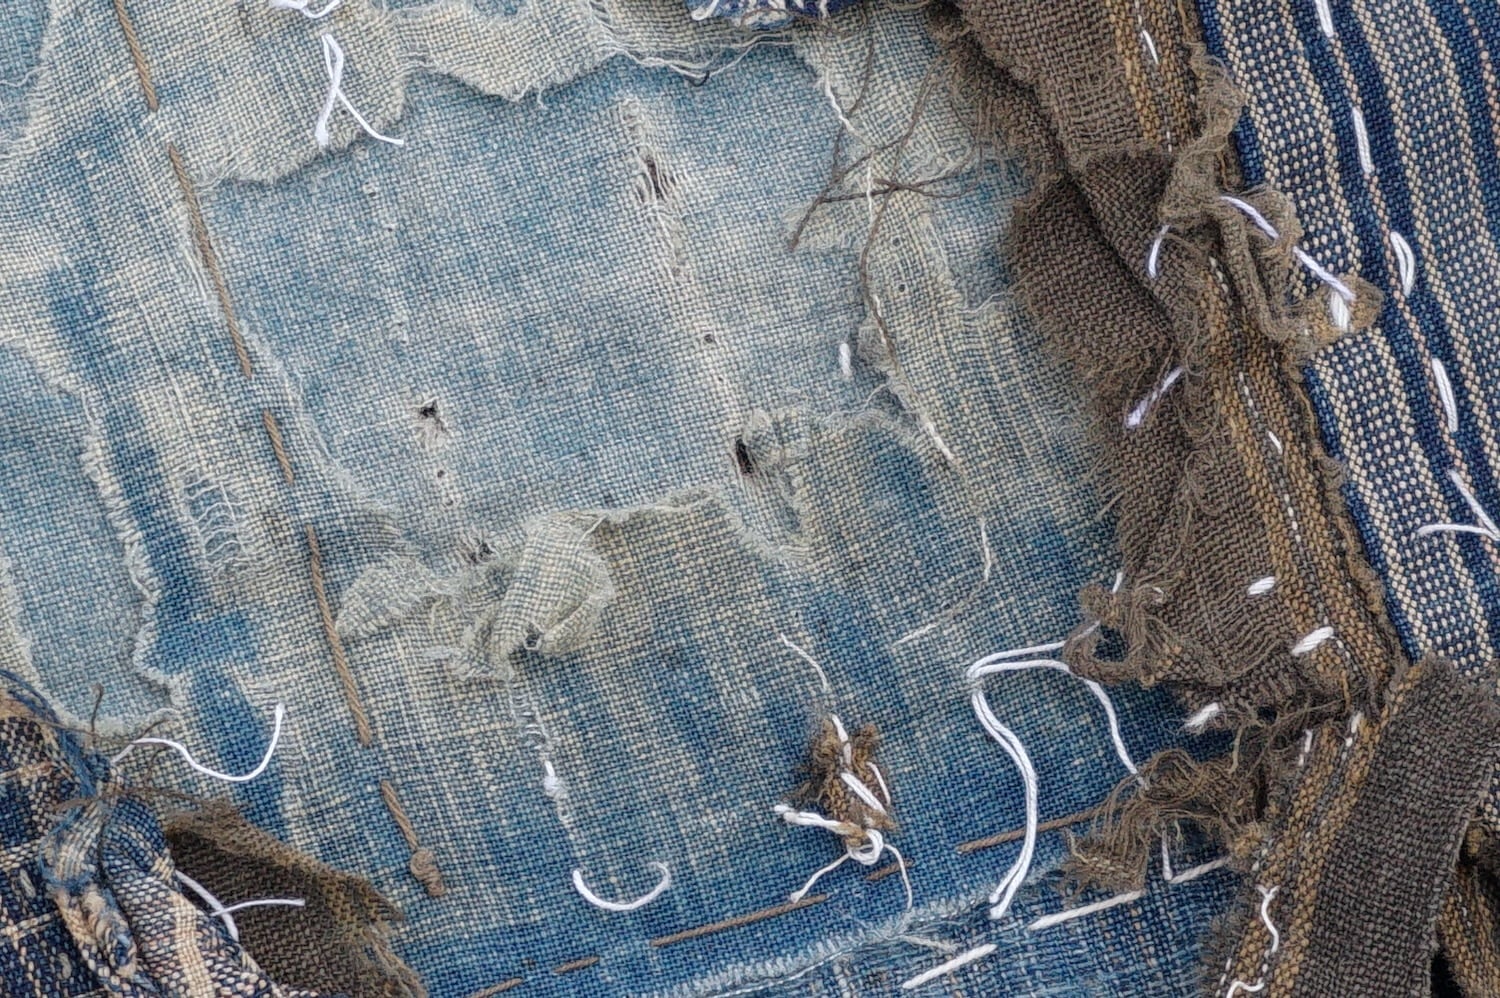 1874 ボロ 襤褸 藍染 木綿 古布 藍無地 縞 絣 筒描き 継ぎ接ぎ 継ぎ